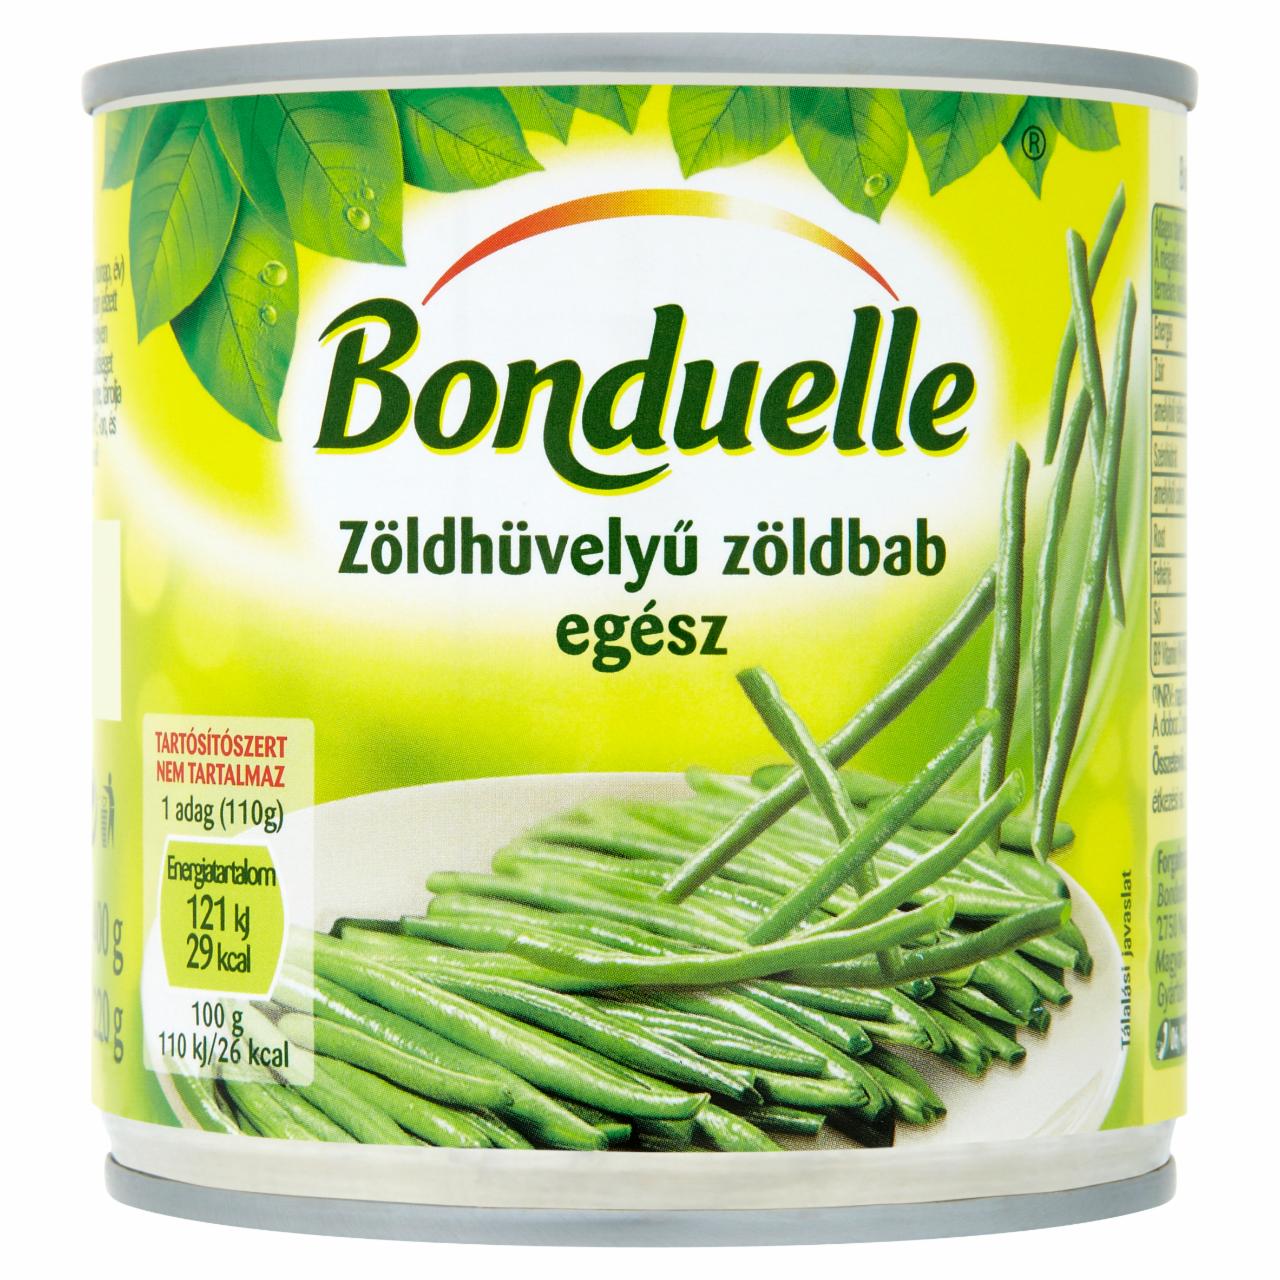 Képek - Bonduelle egész zöldhüvelyű zöldbab 400 g